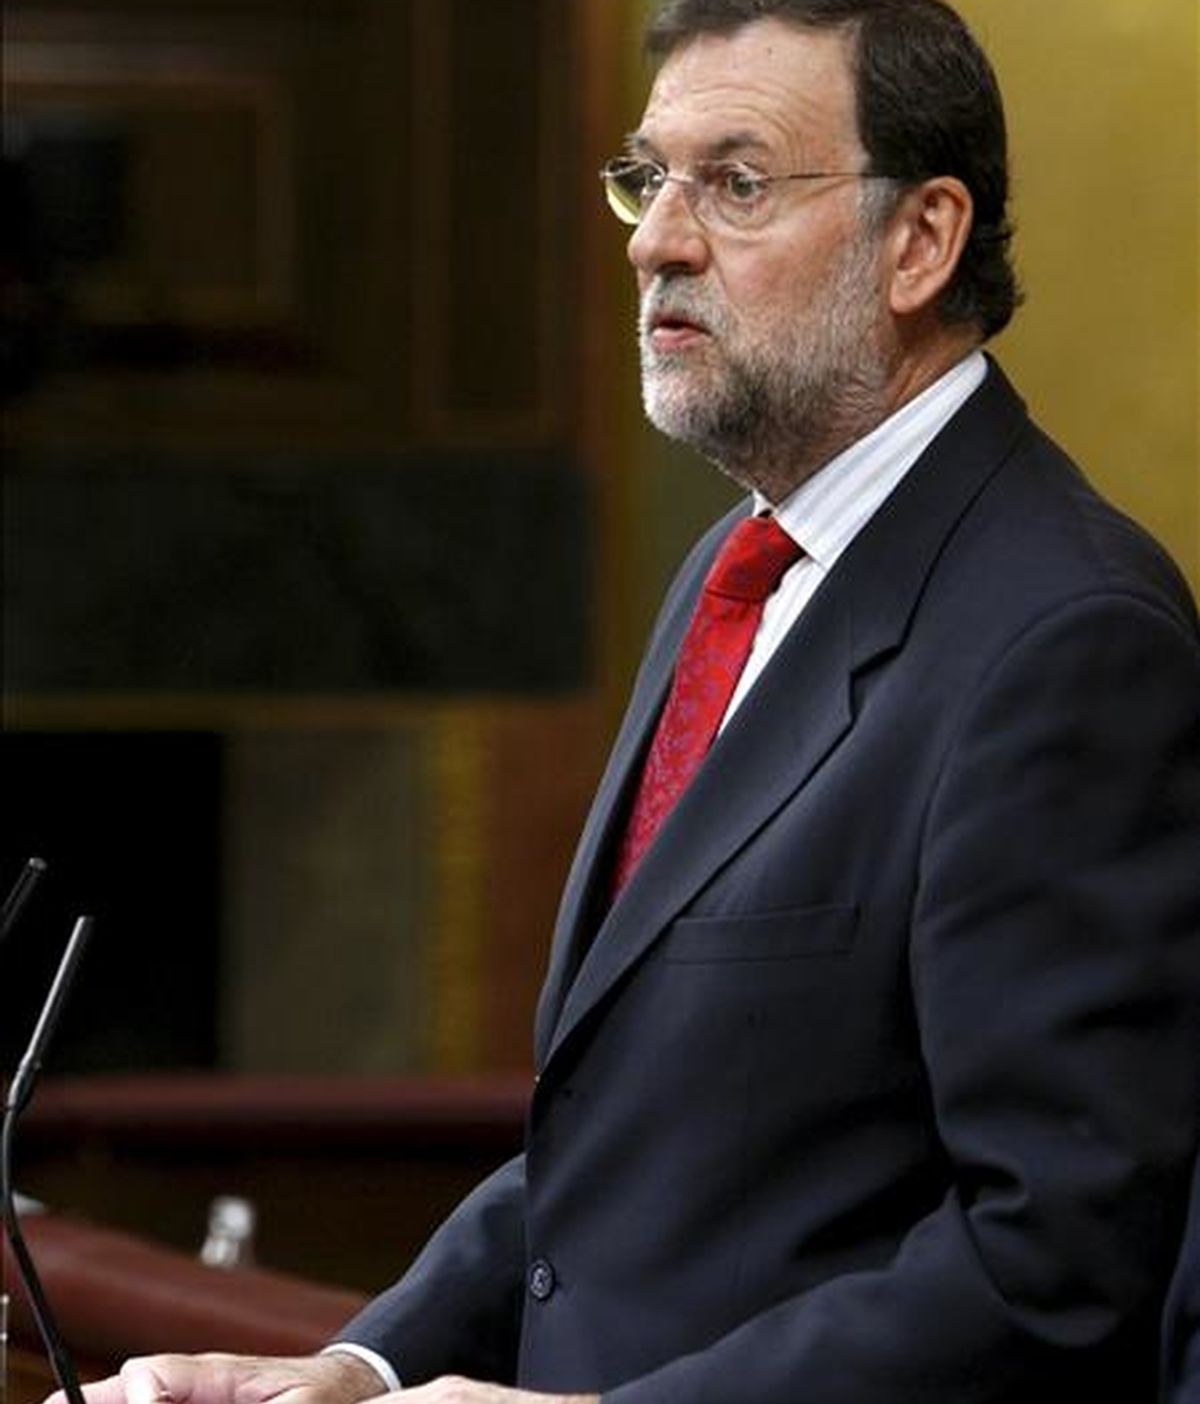 El líder del PP, Mariano Rajoy, durante una de sus intervenciones en la sesión de control al Ejecutivo que se celebra en el Congreso, y en la que se habla, entre otros asuntos, de las críticas del Banco de España al aumento del déficit público. EFE